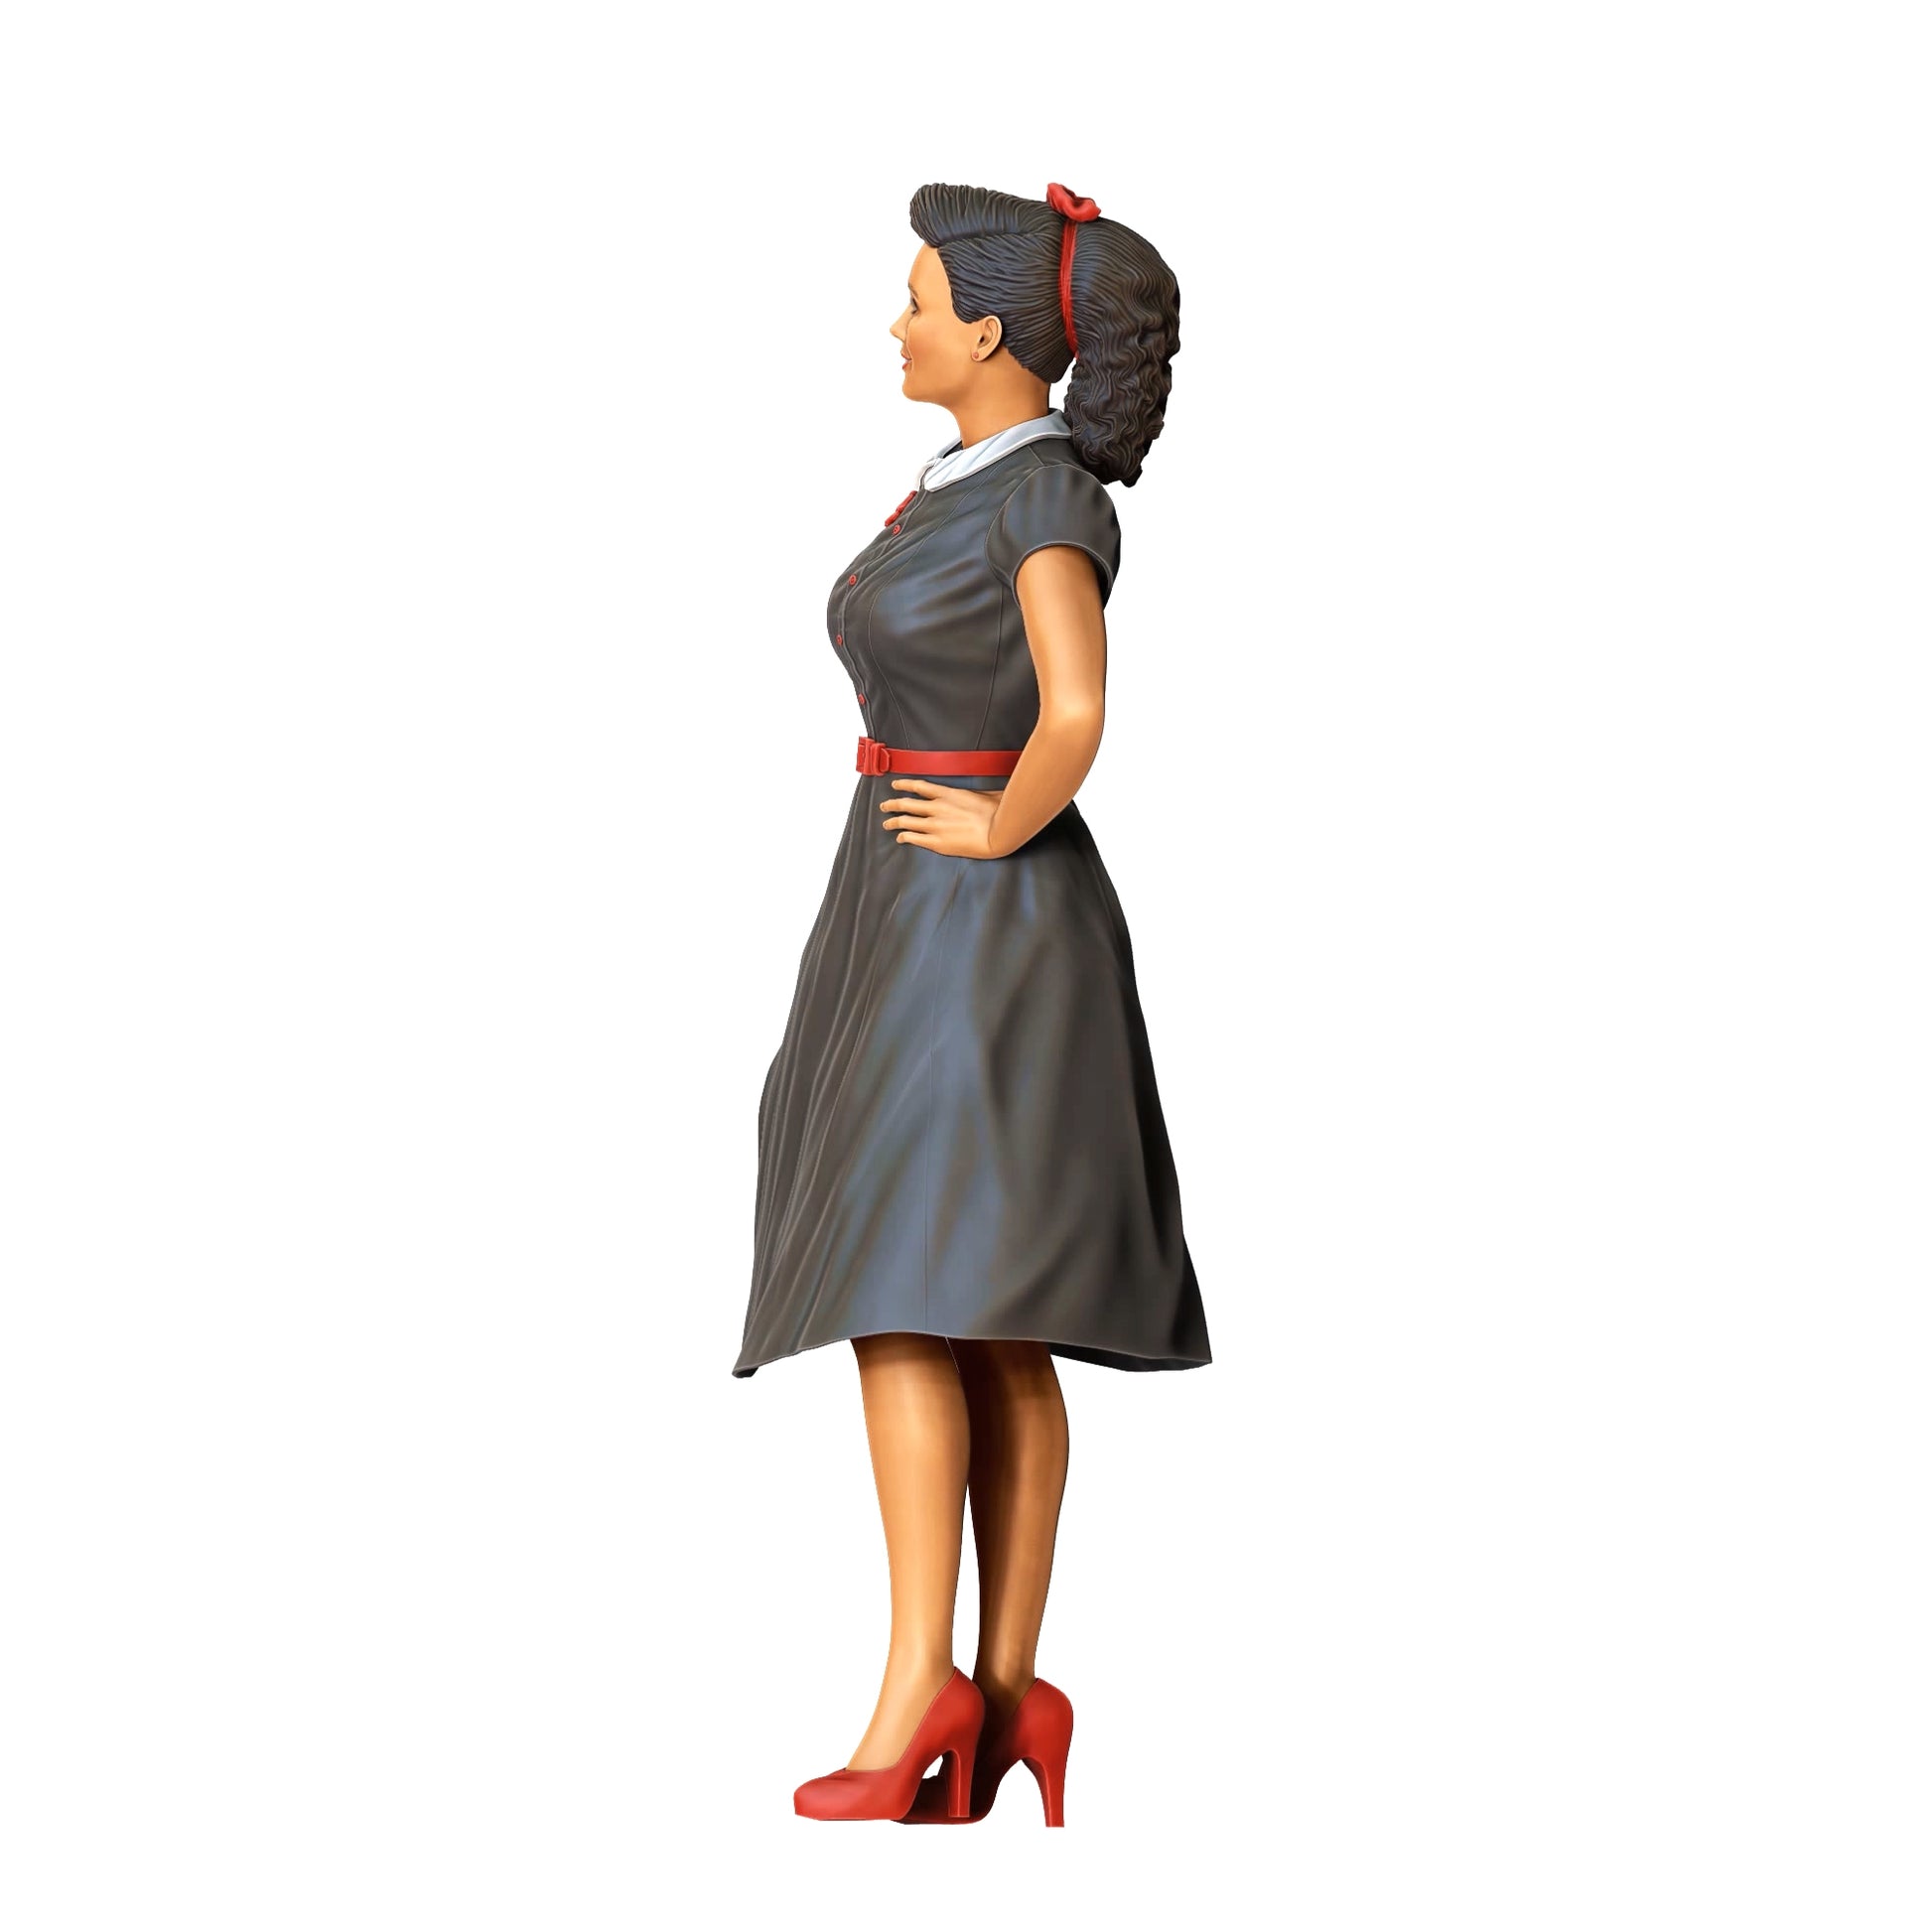 Produktfoto Diorama und Modellbau Miniatur Figur: Frau in Kleid - Rockabilly Style Rock n Roll